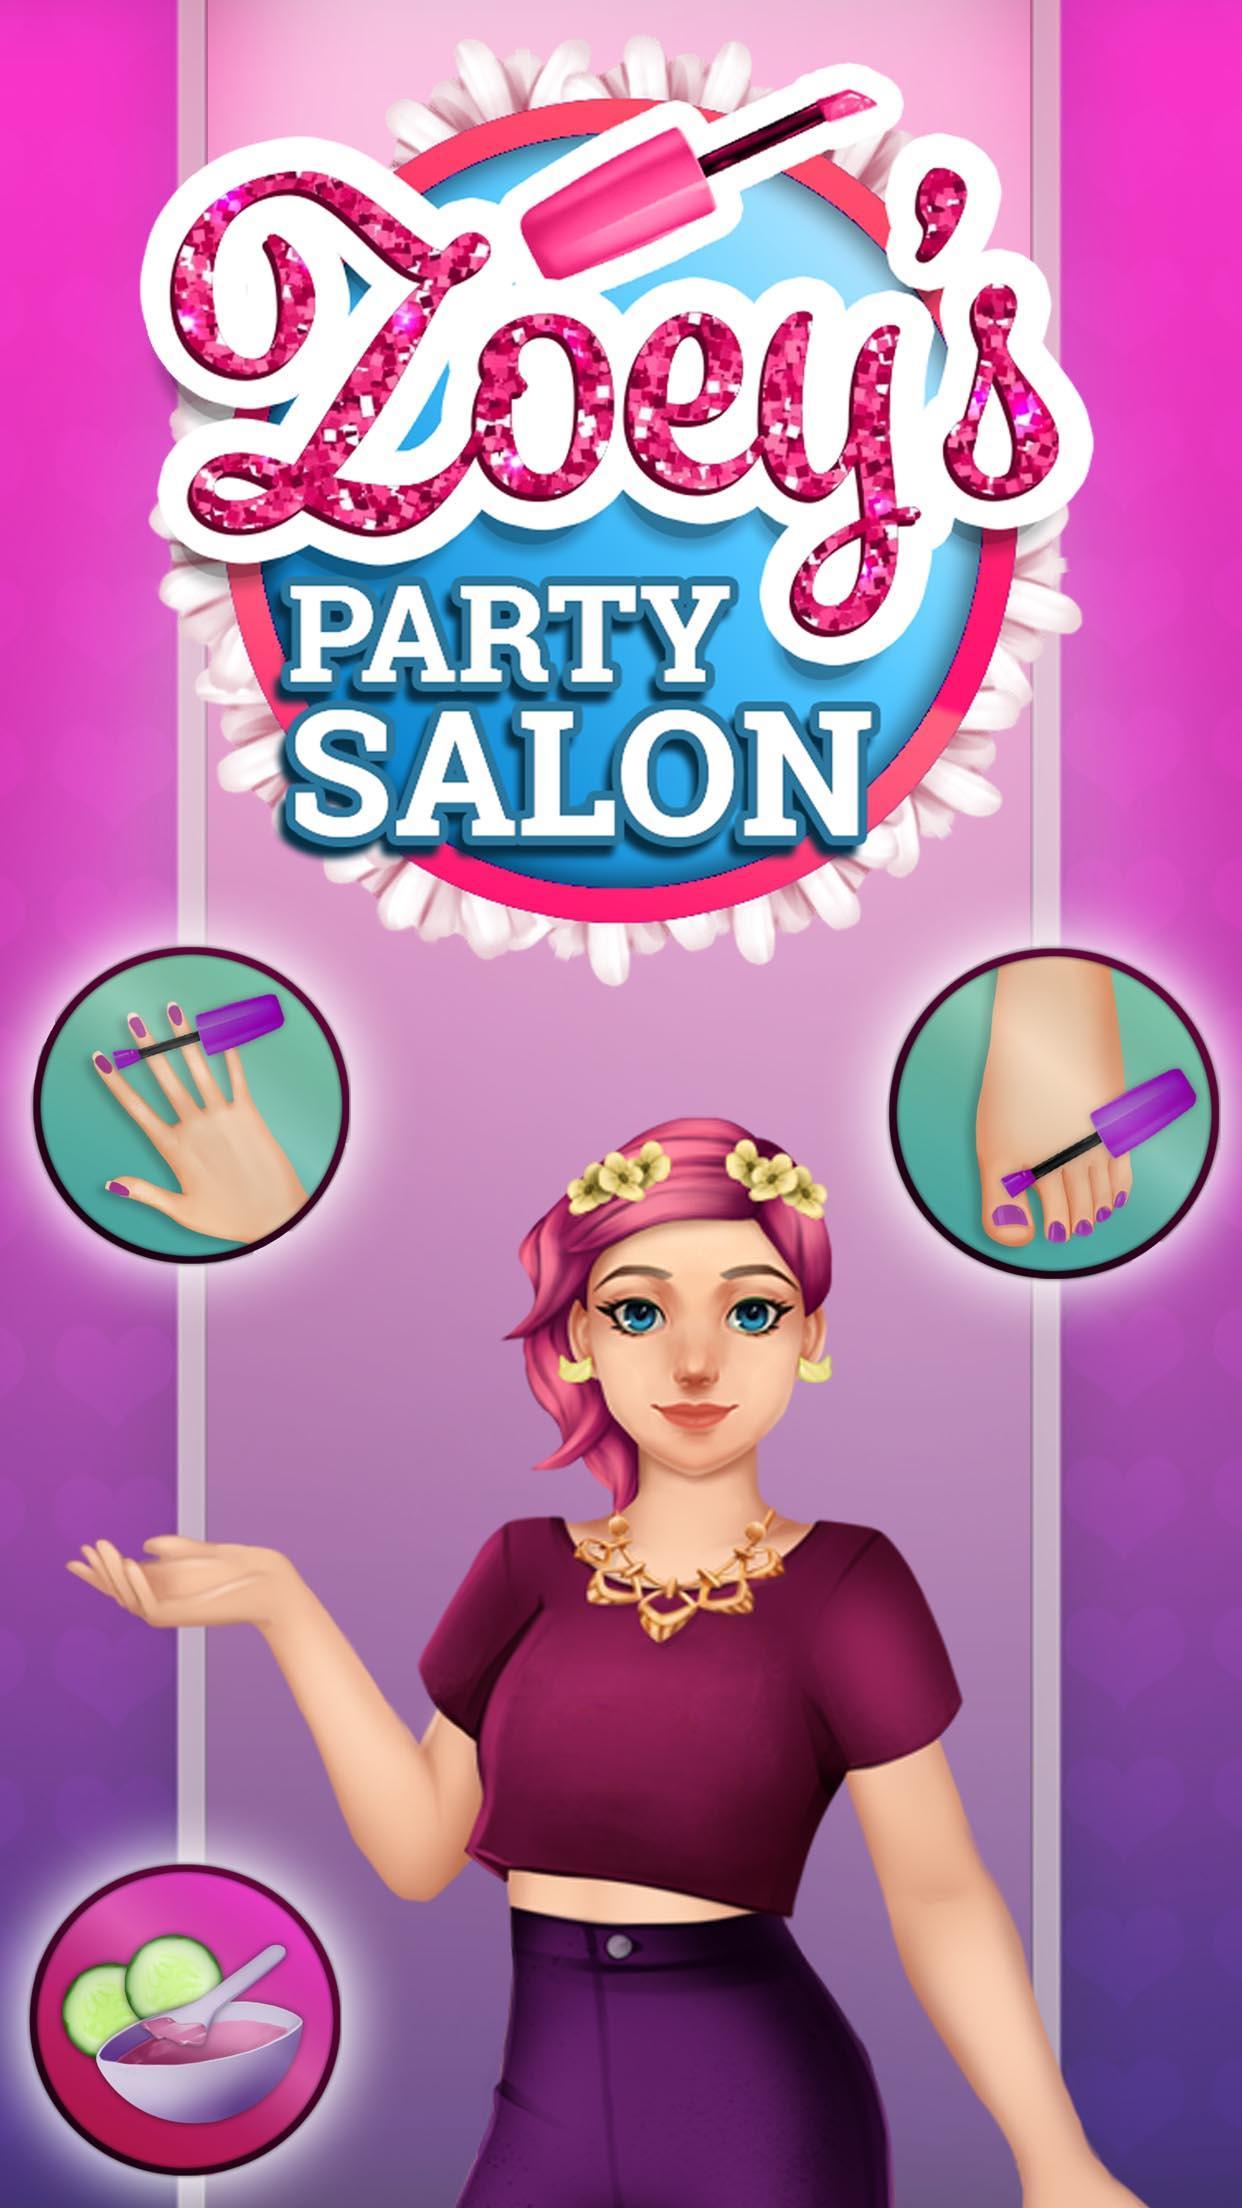 Screenshot 1 of Zoey's Party Salon - Unghie, trucco, spa e abbigliamento 1.0.23